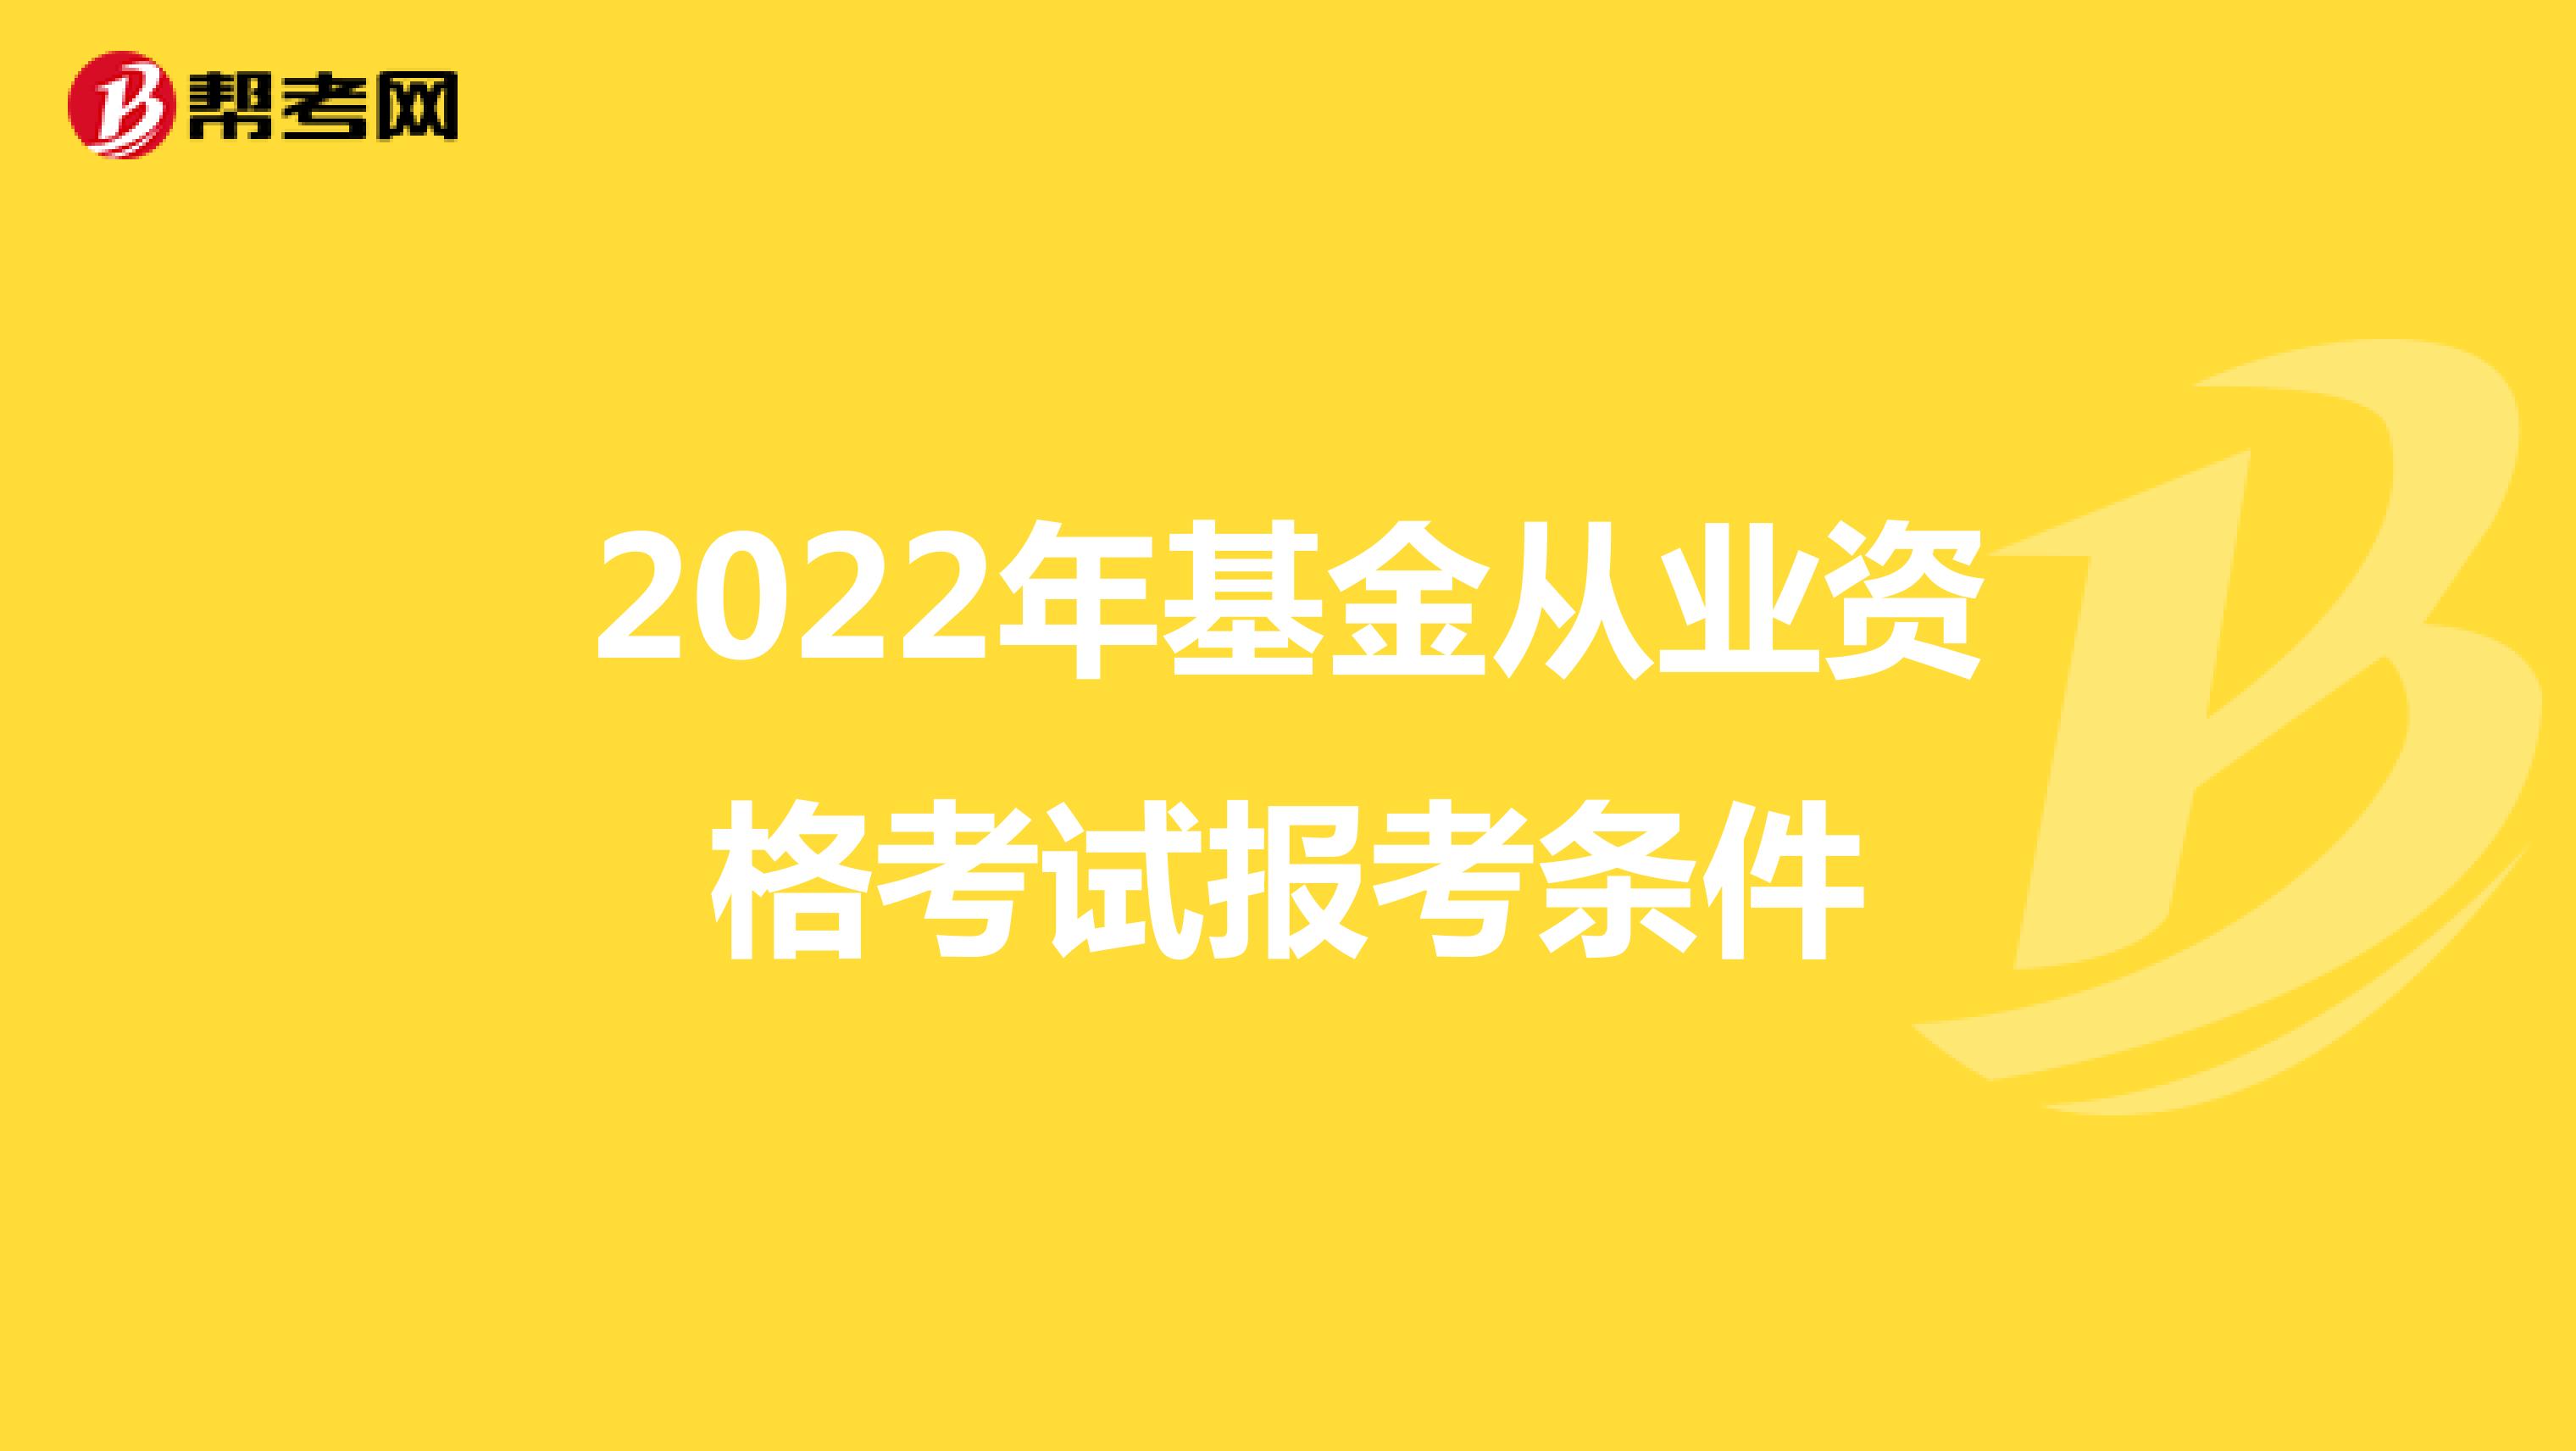 2022年基金从业资格考试报考条件